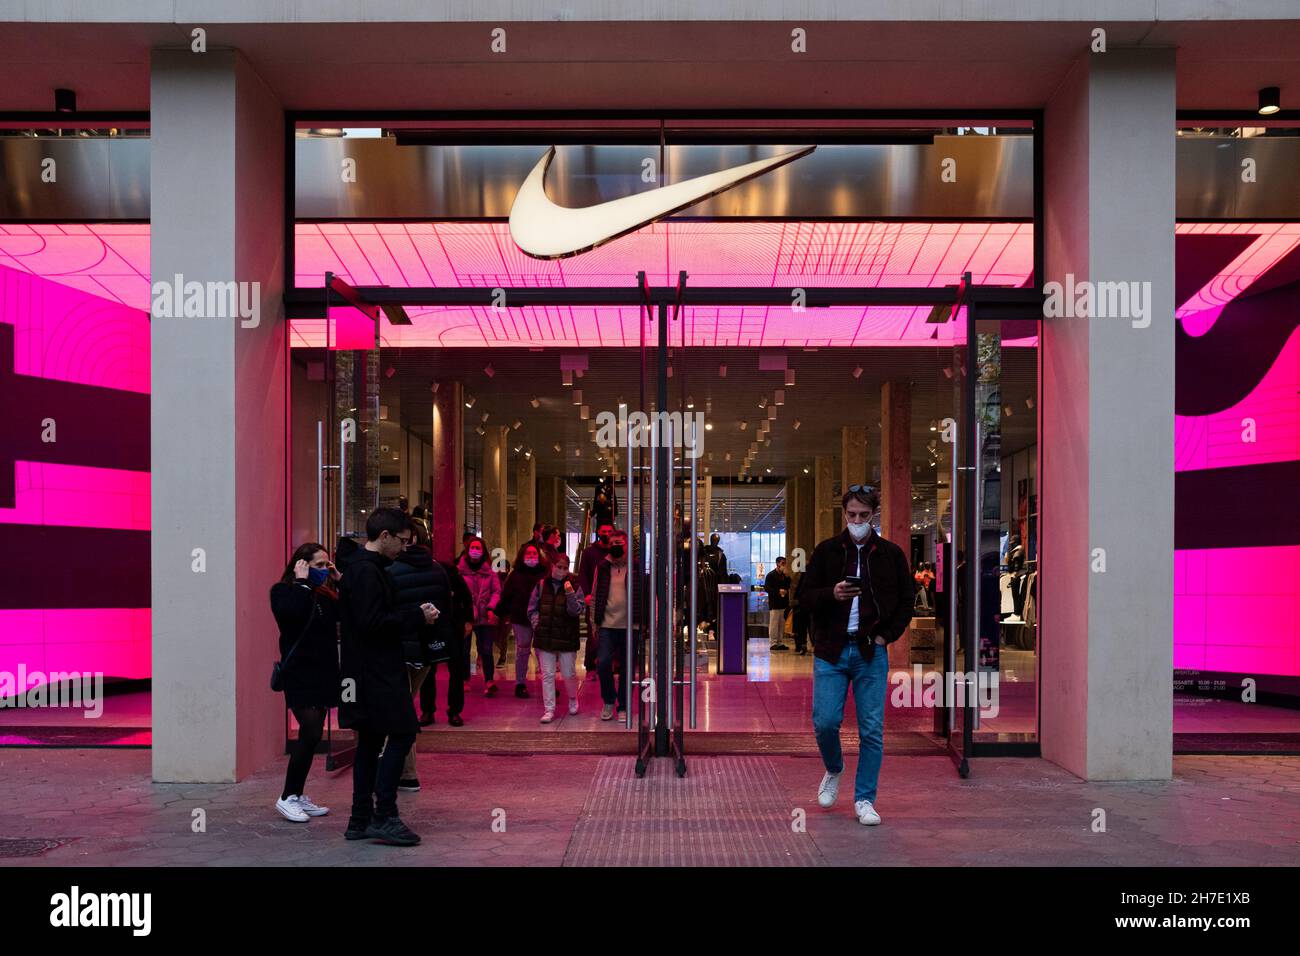 Espagne.20 novembre 2021.Le 20 novembre 2021, des gens marchent devant un  magasin de vêtements Nike dans la rue Passeig de Gracia, dans le  centre-ville de Barcelone, en Espagne.(Photo par Davide Bonaldo/Sipa USA)